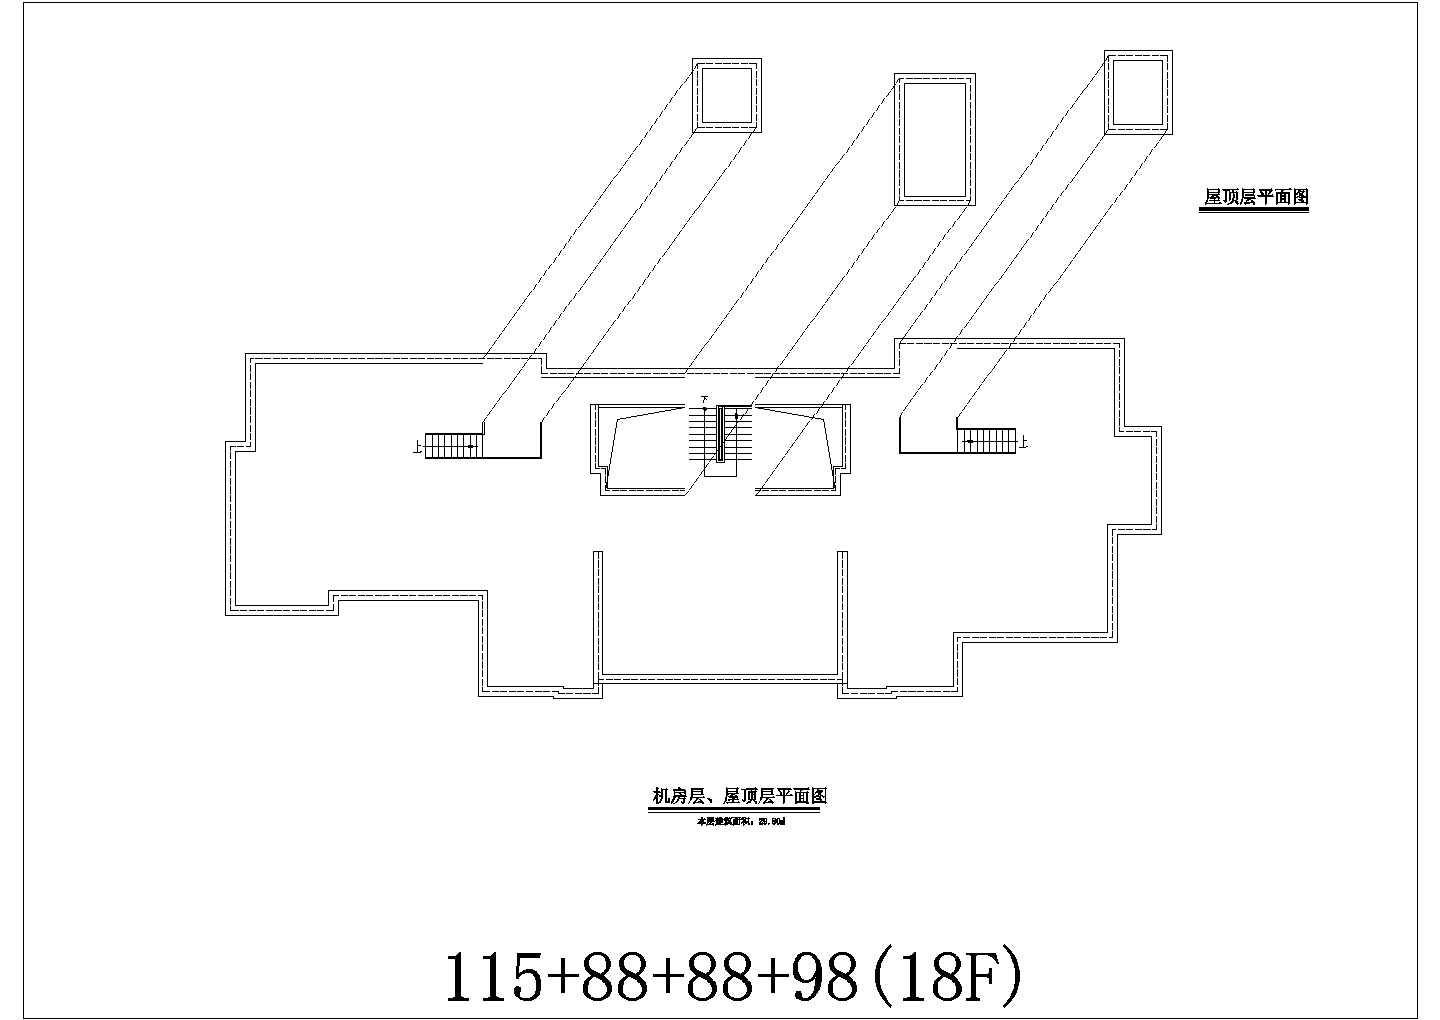 万科徐州18层住宅楼全套施工设计cad图纸(含各层平面图)